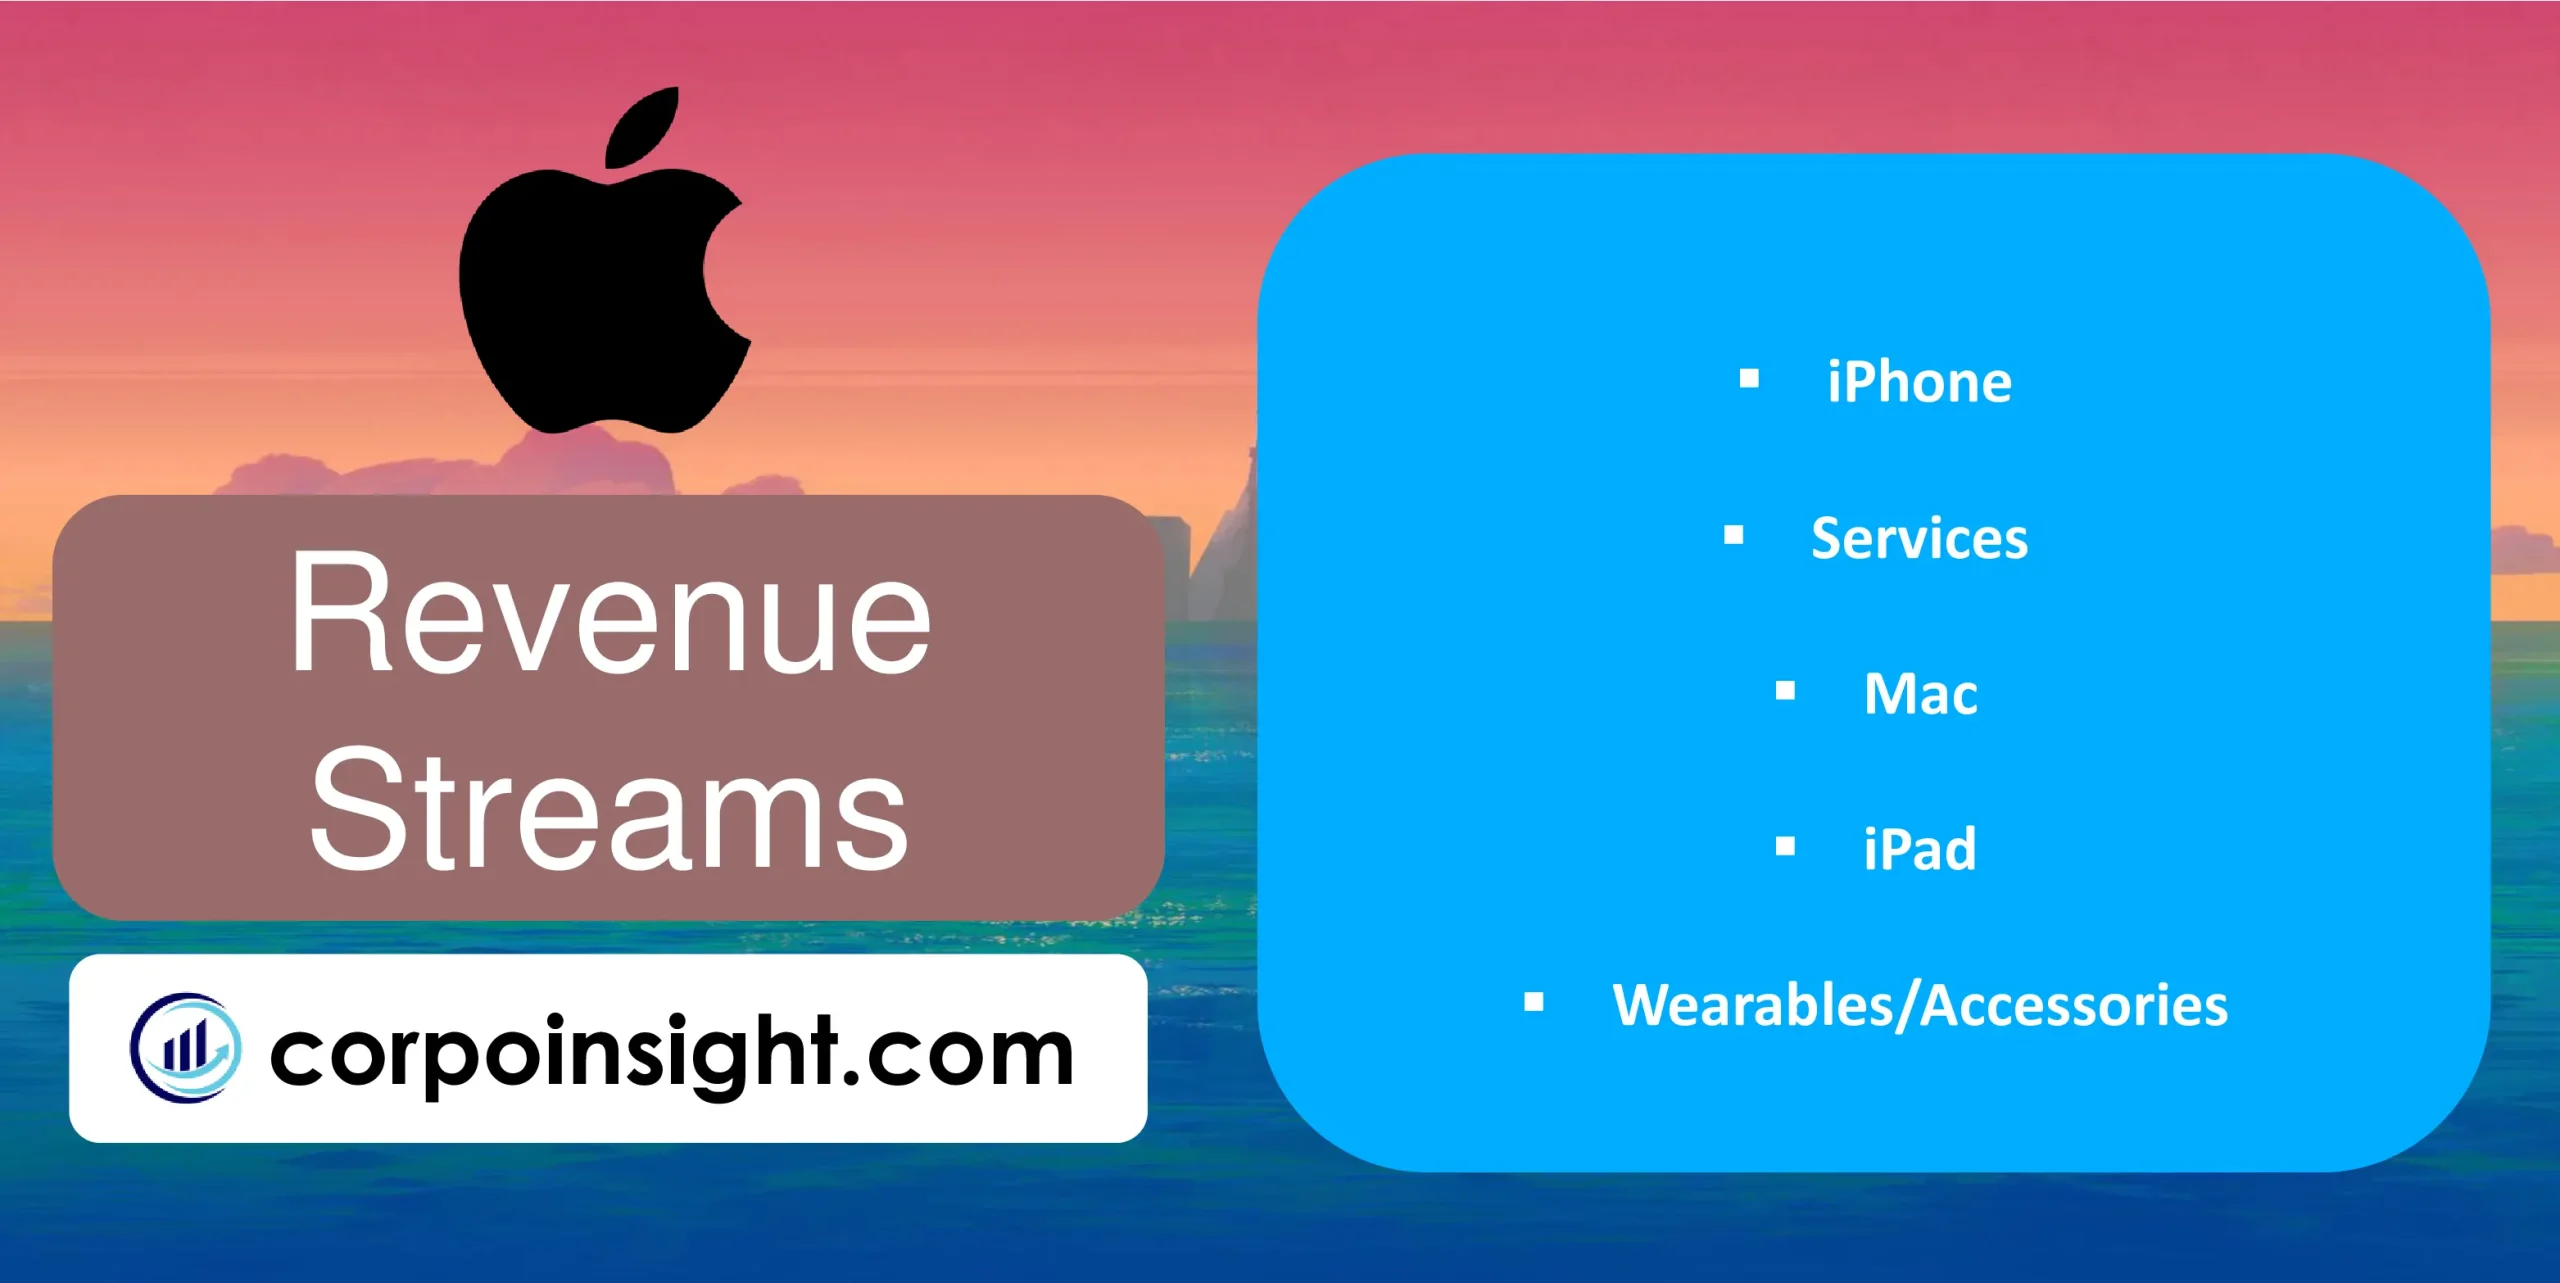 Revenue Streams of Apple